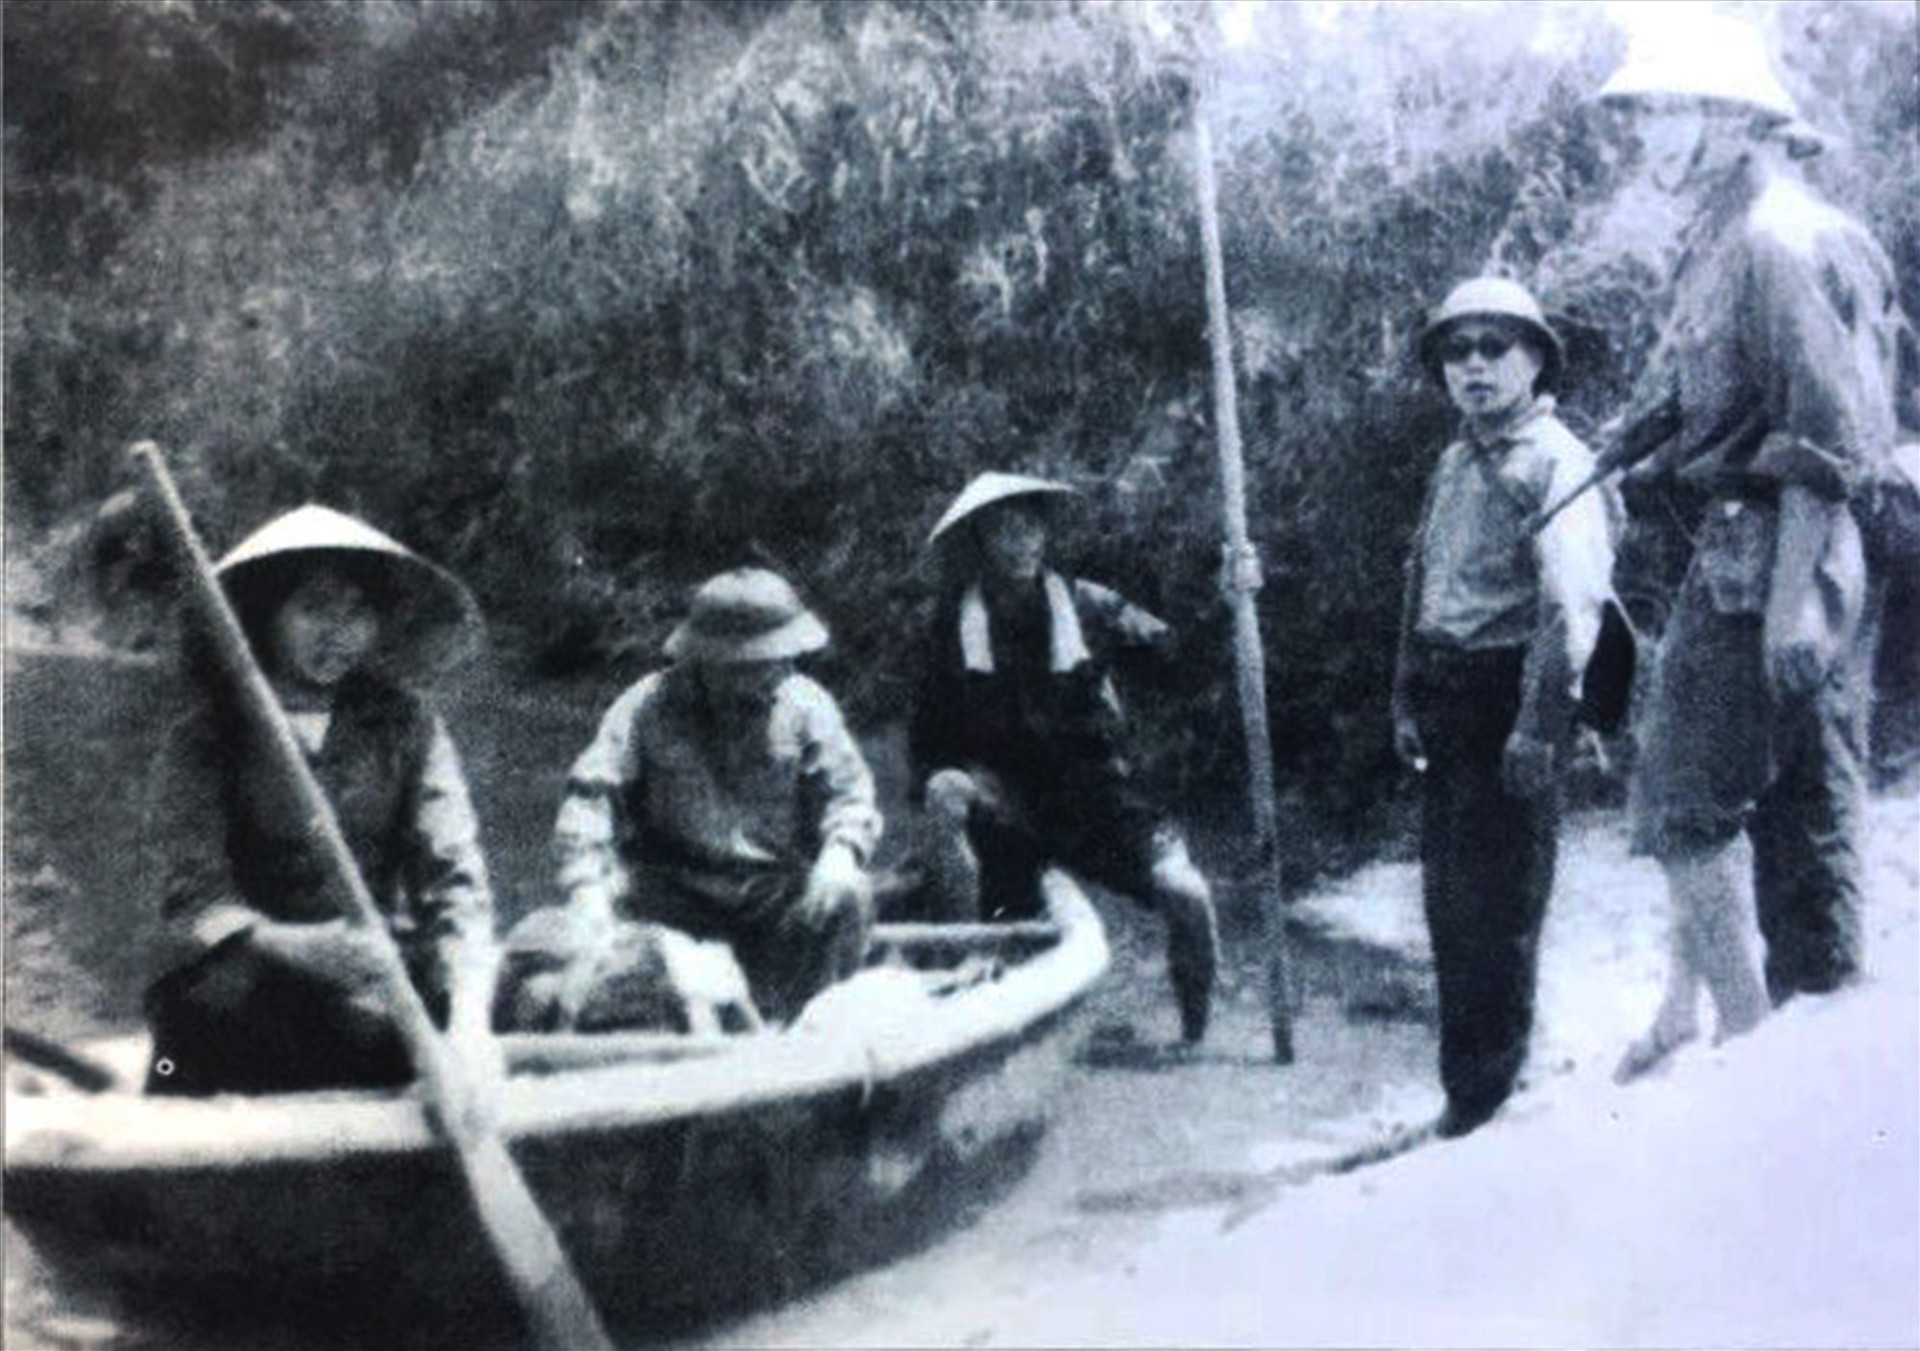 Đồng chí Võ Chí Công, Bí thư Khu ủy, Chính ủy QK5 (ngồi giữa trên thuyền) kiểm tra công tác chuẩn bị chiến dịch Mậu Thân năm 1968 tại Khe Cát, huyện Tiên Phước